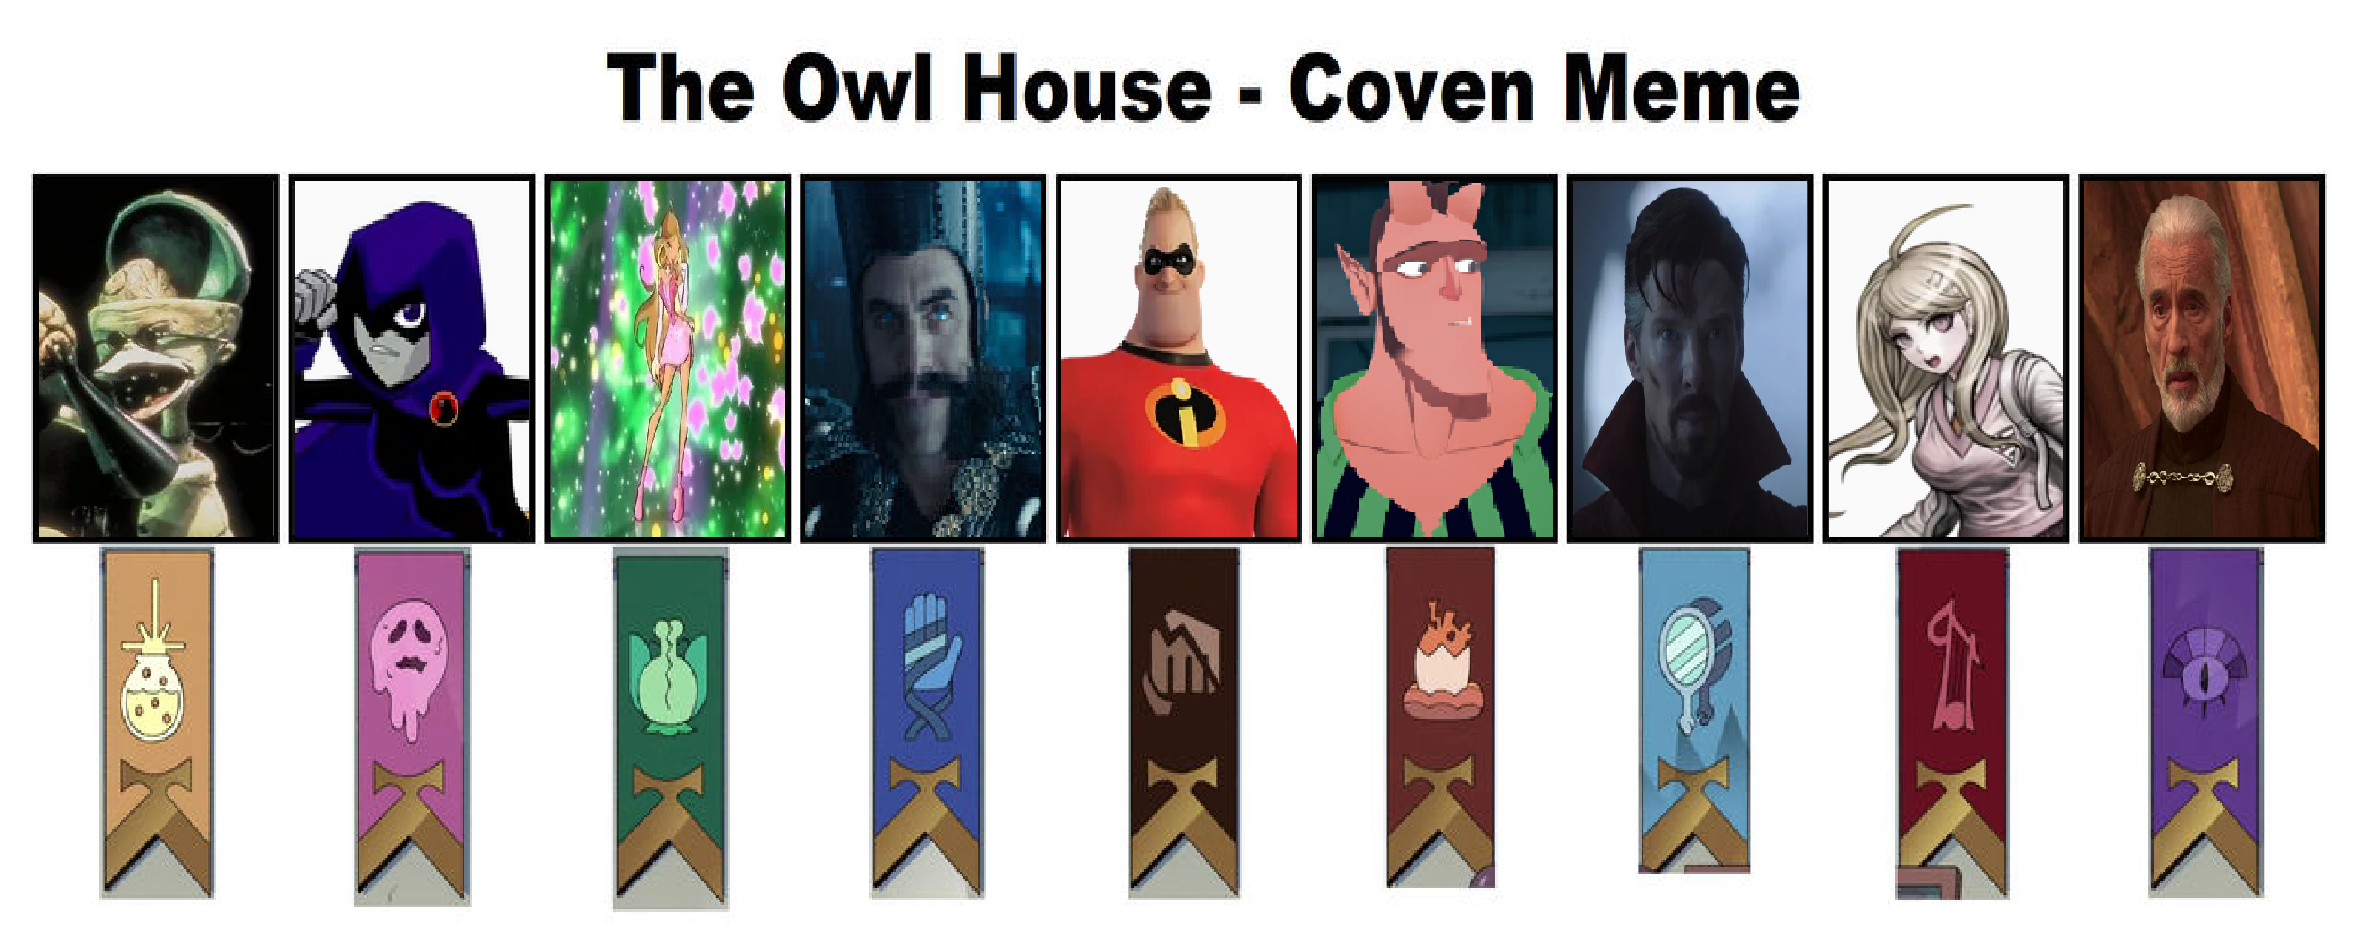 My Owl House Cast by darknessawakens13 on DeviantArt